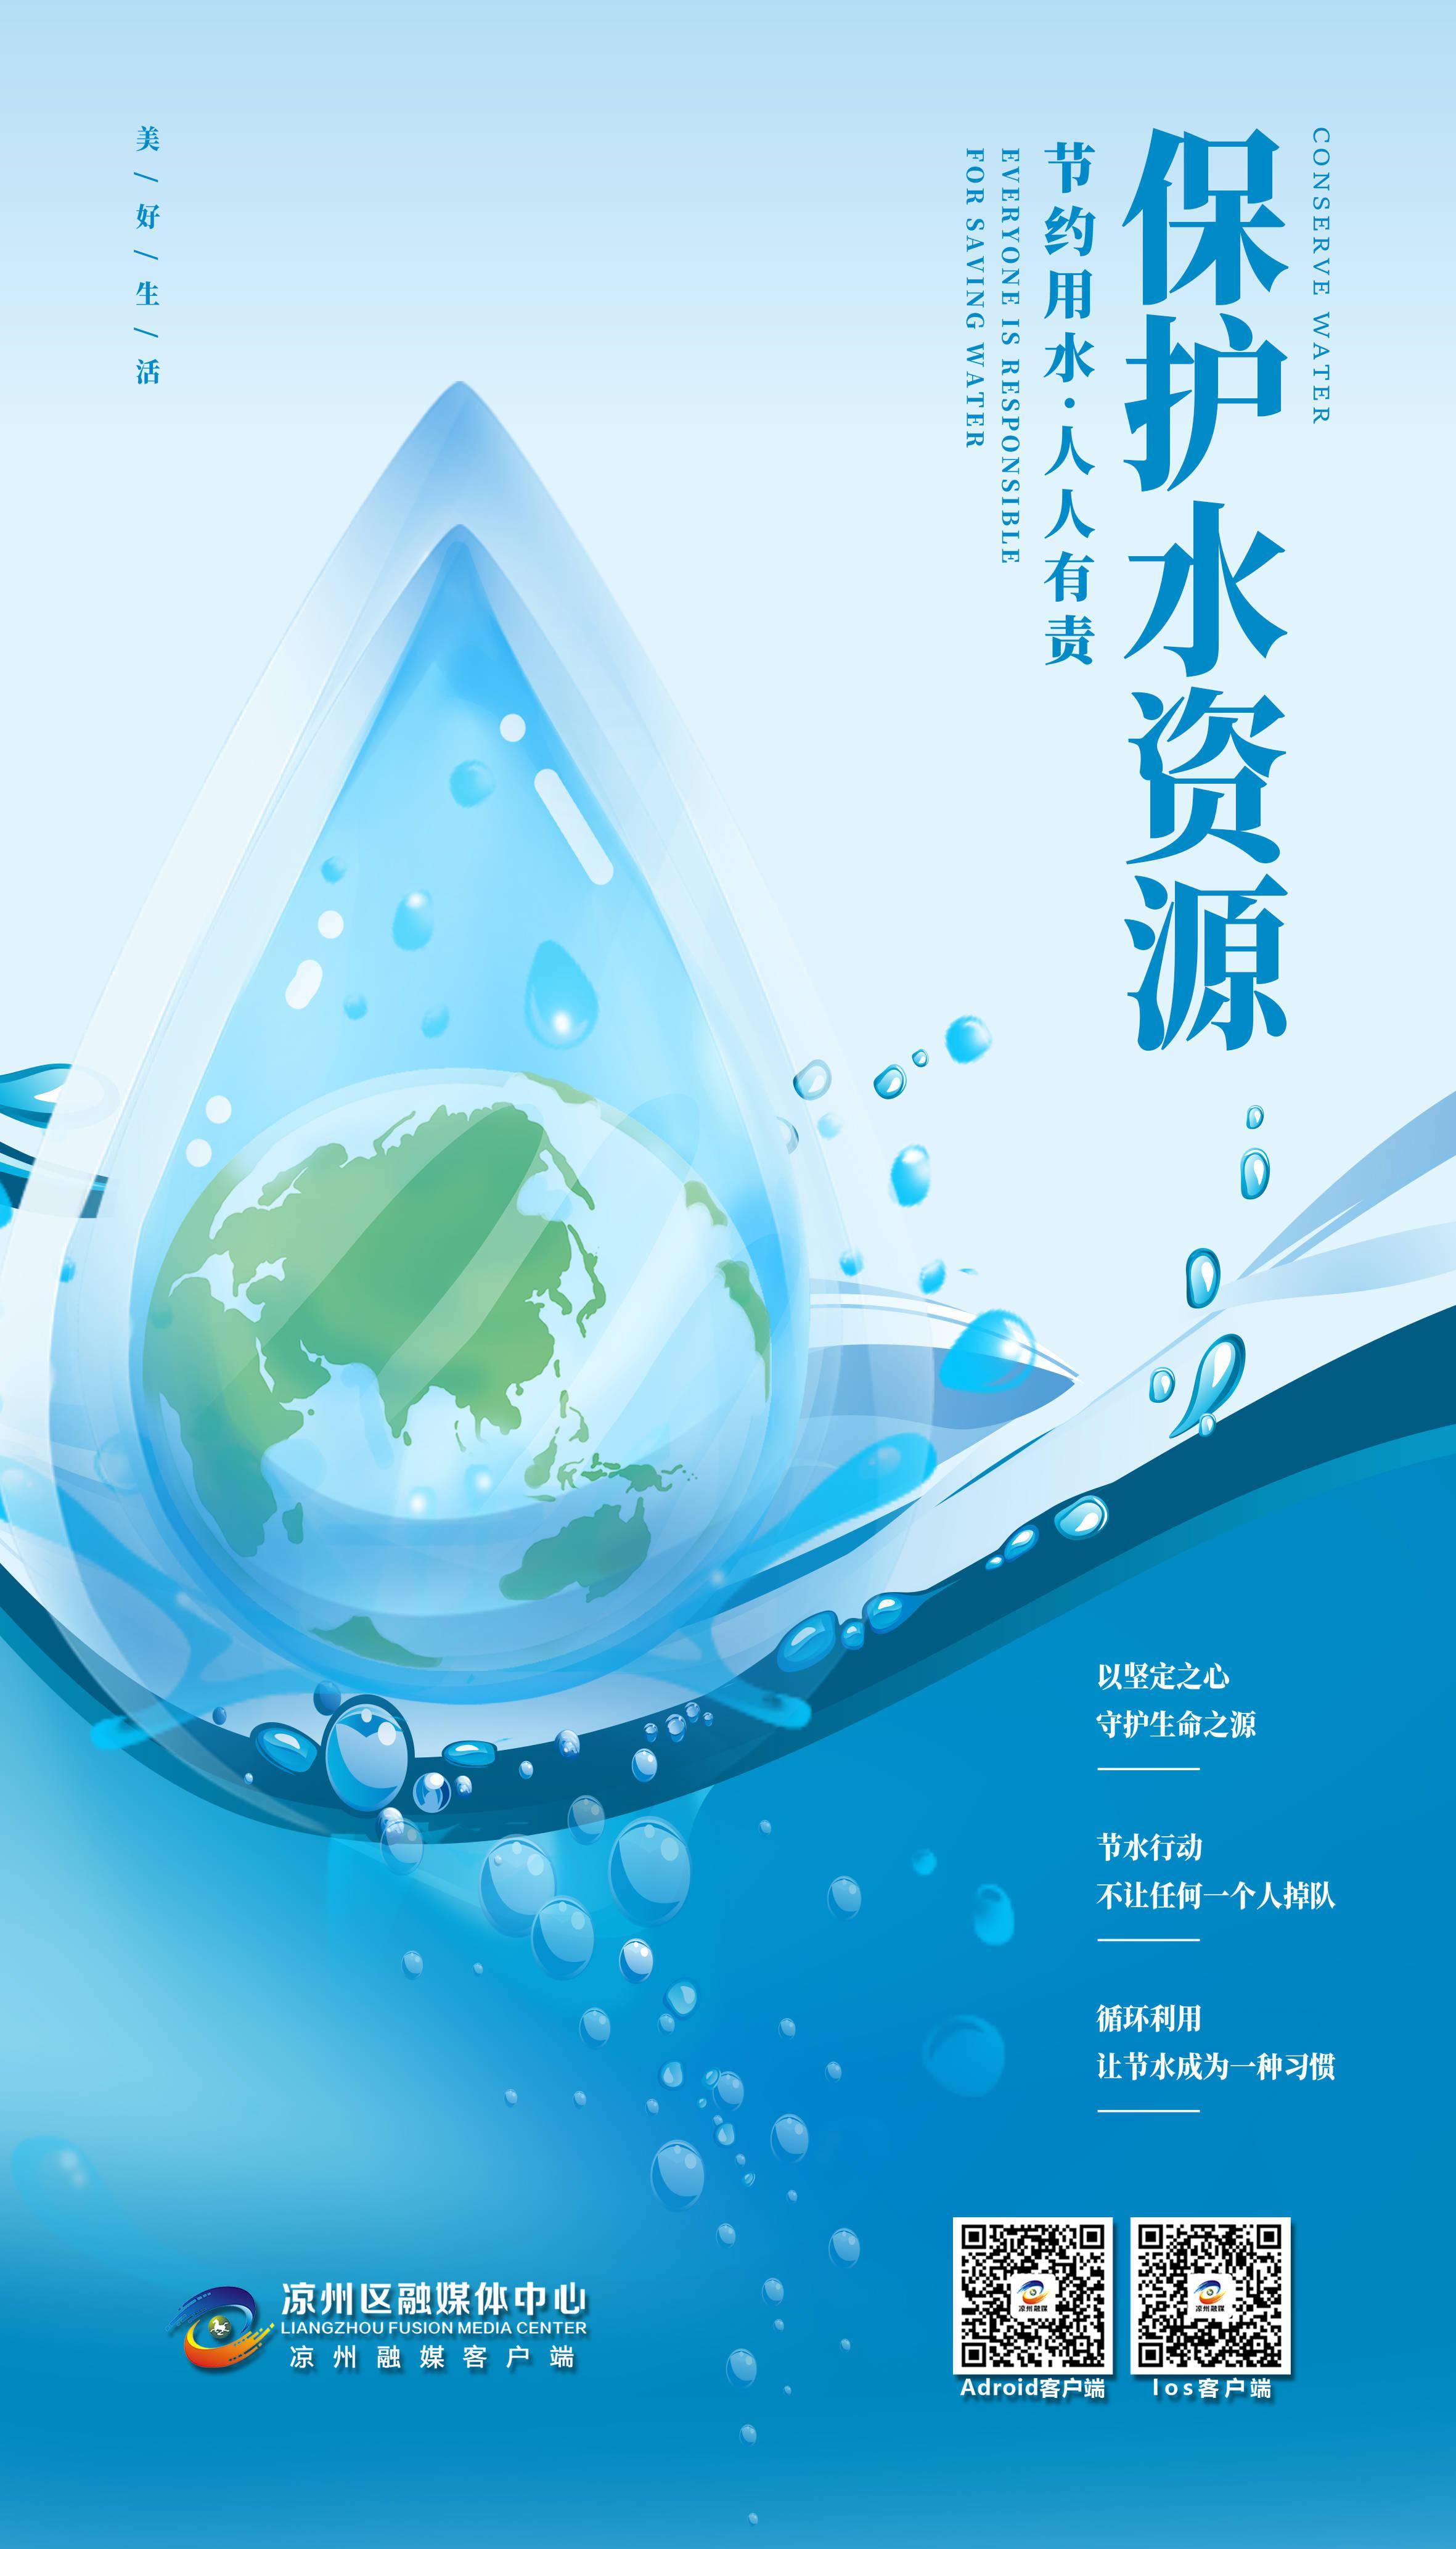 【微海报】保护水资源 人人有责